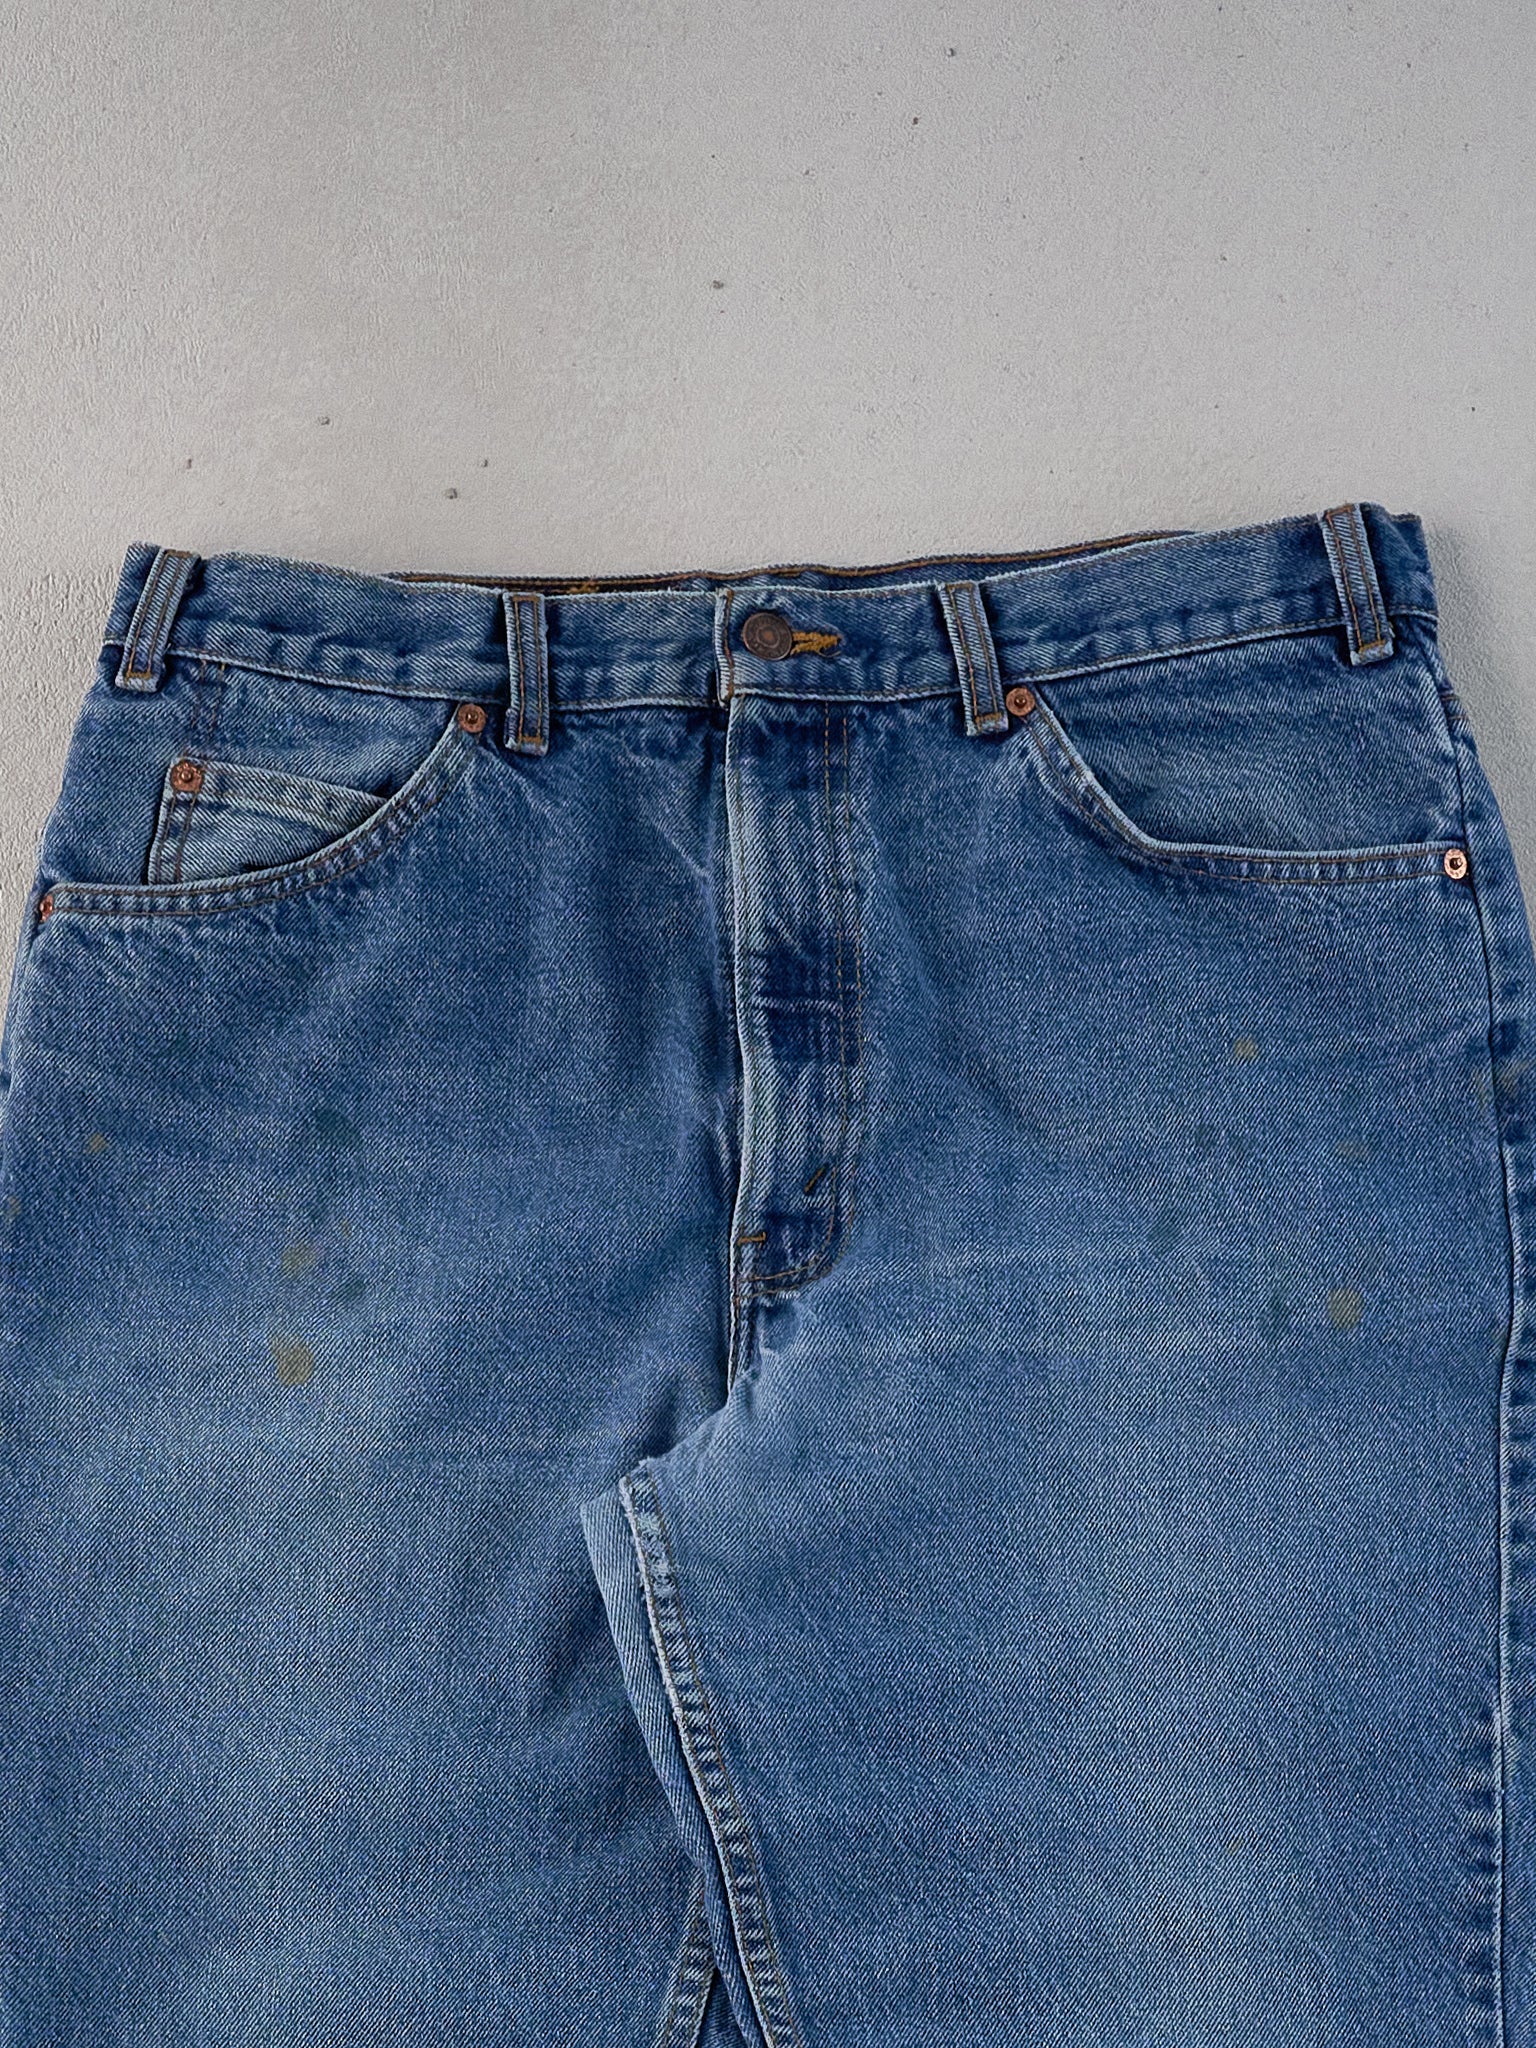 Vintage 70s Blue Levi's 506 Denim Jeans (33x33)